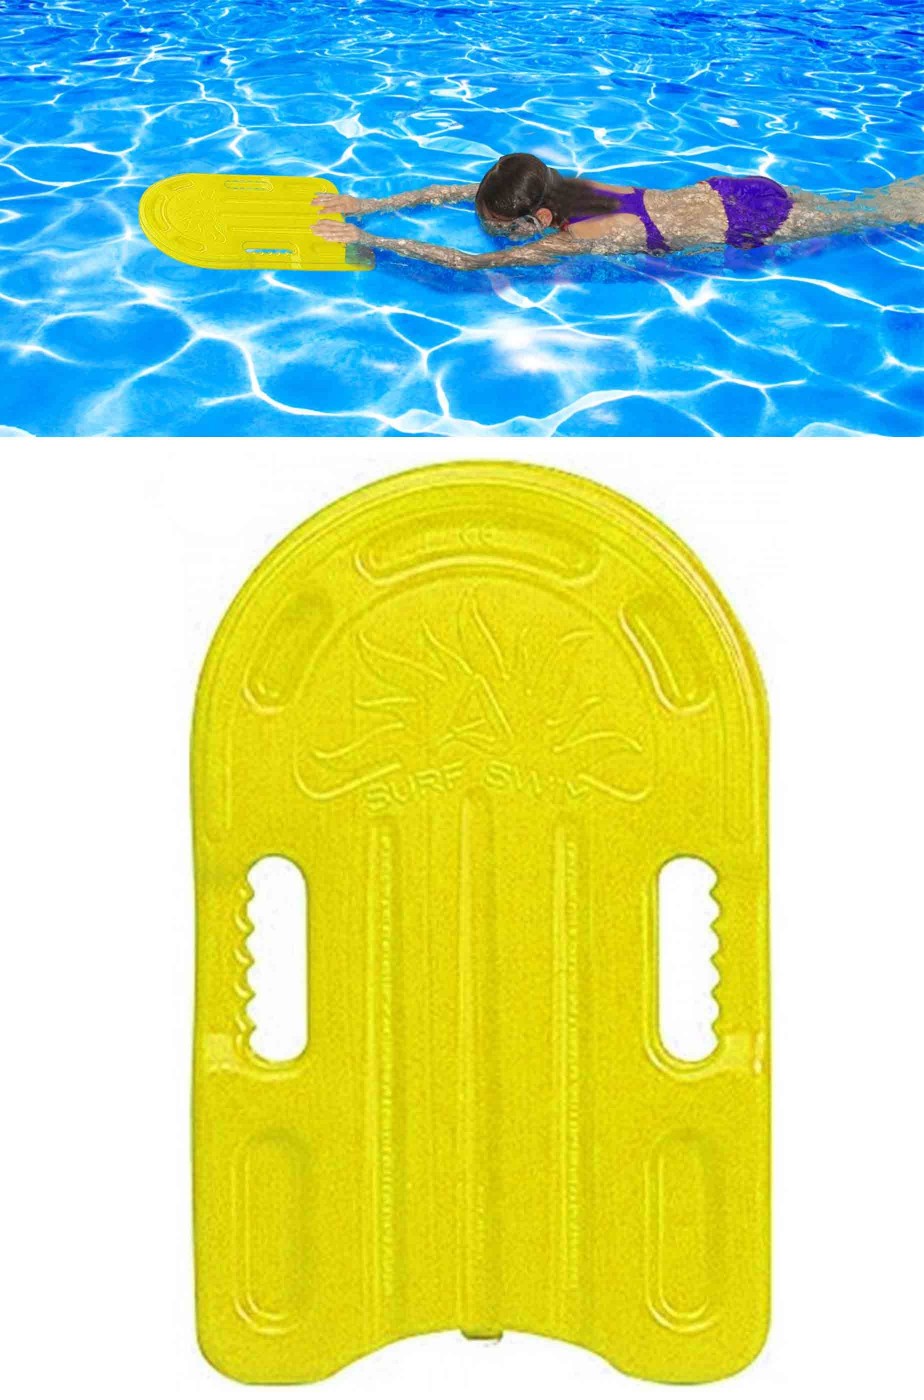 Tavola tavoletta da nuoto in plastica 45cm gialla